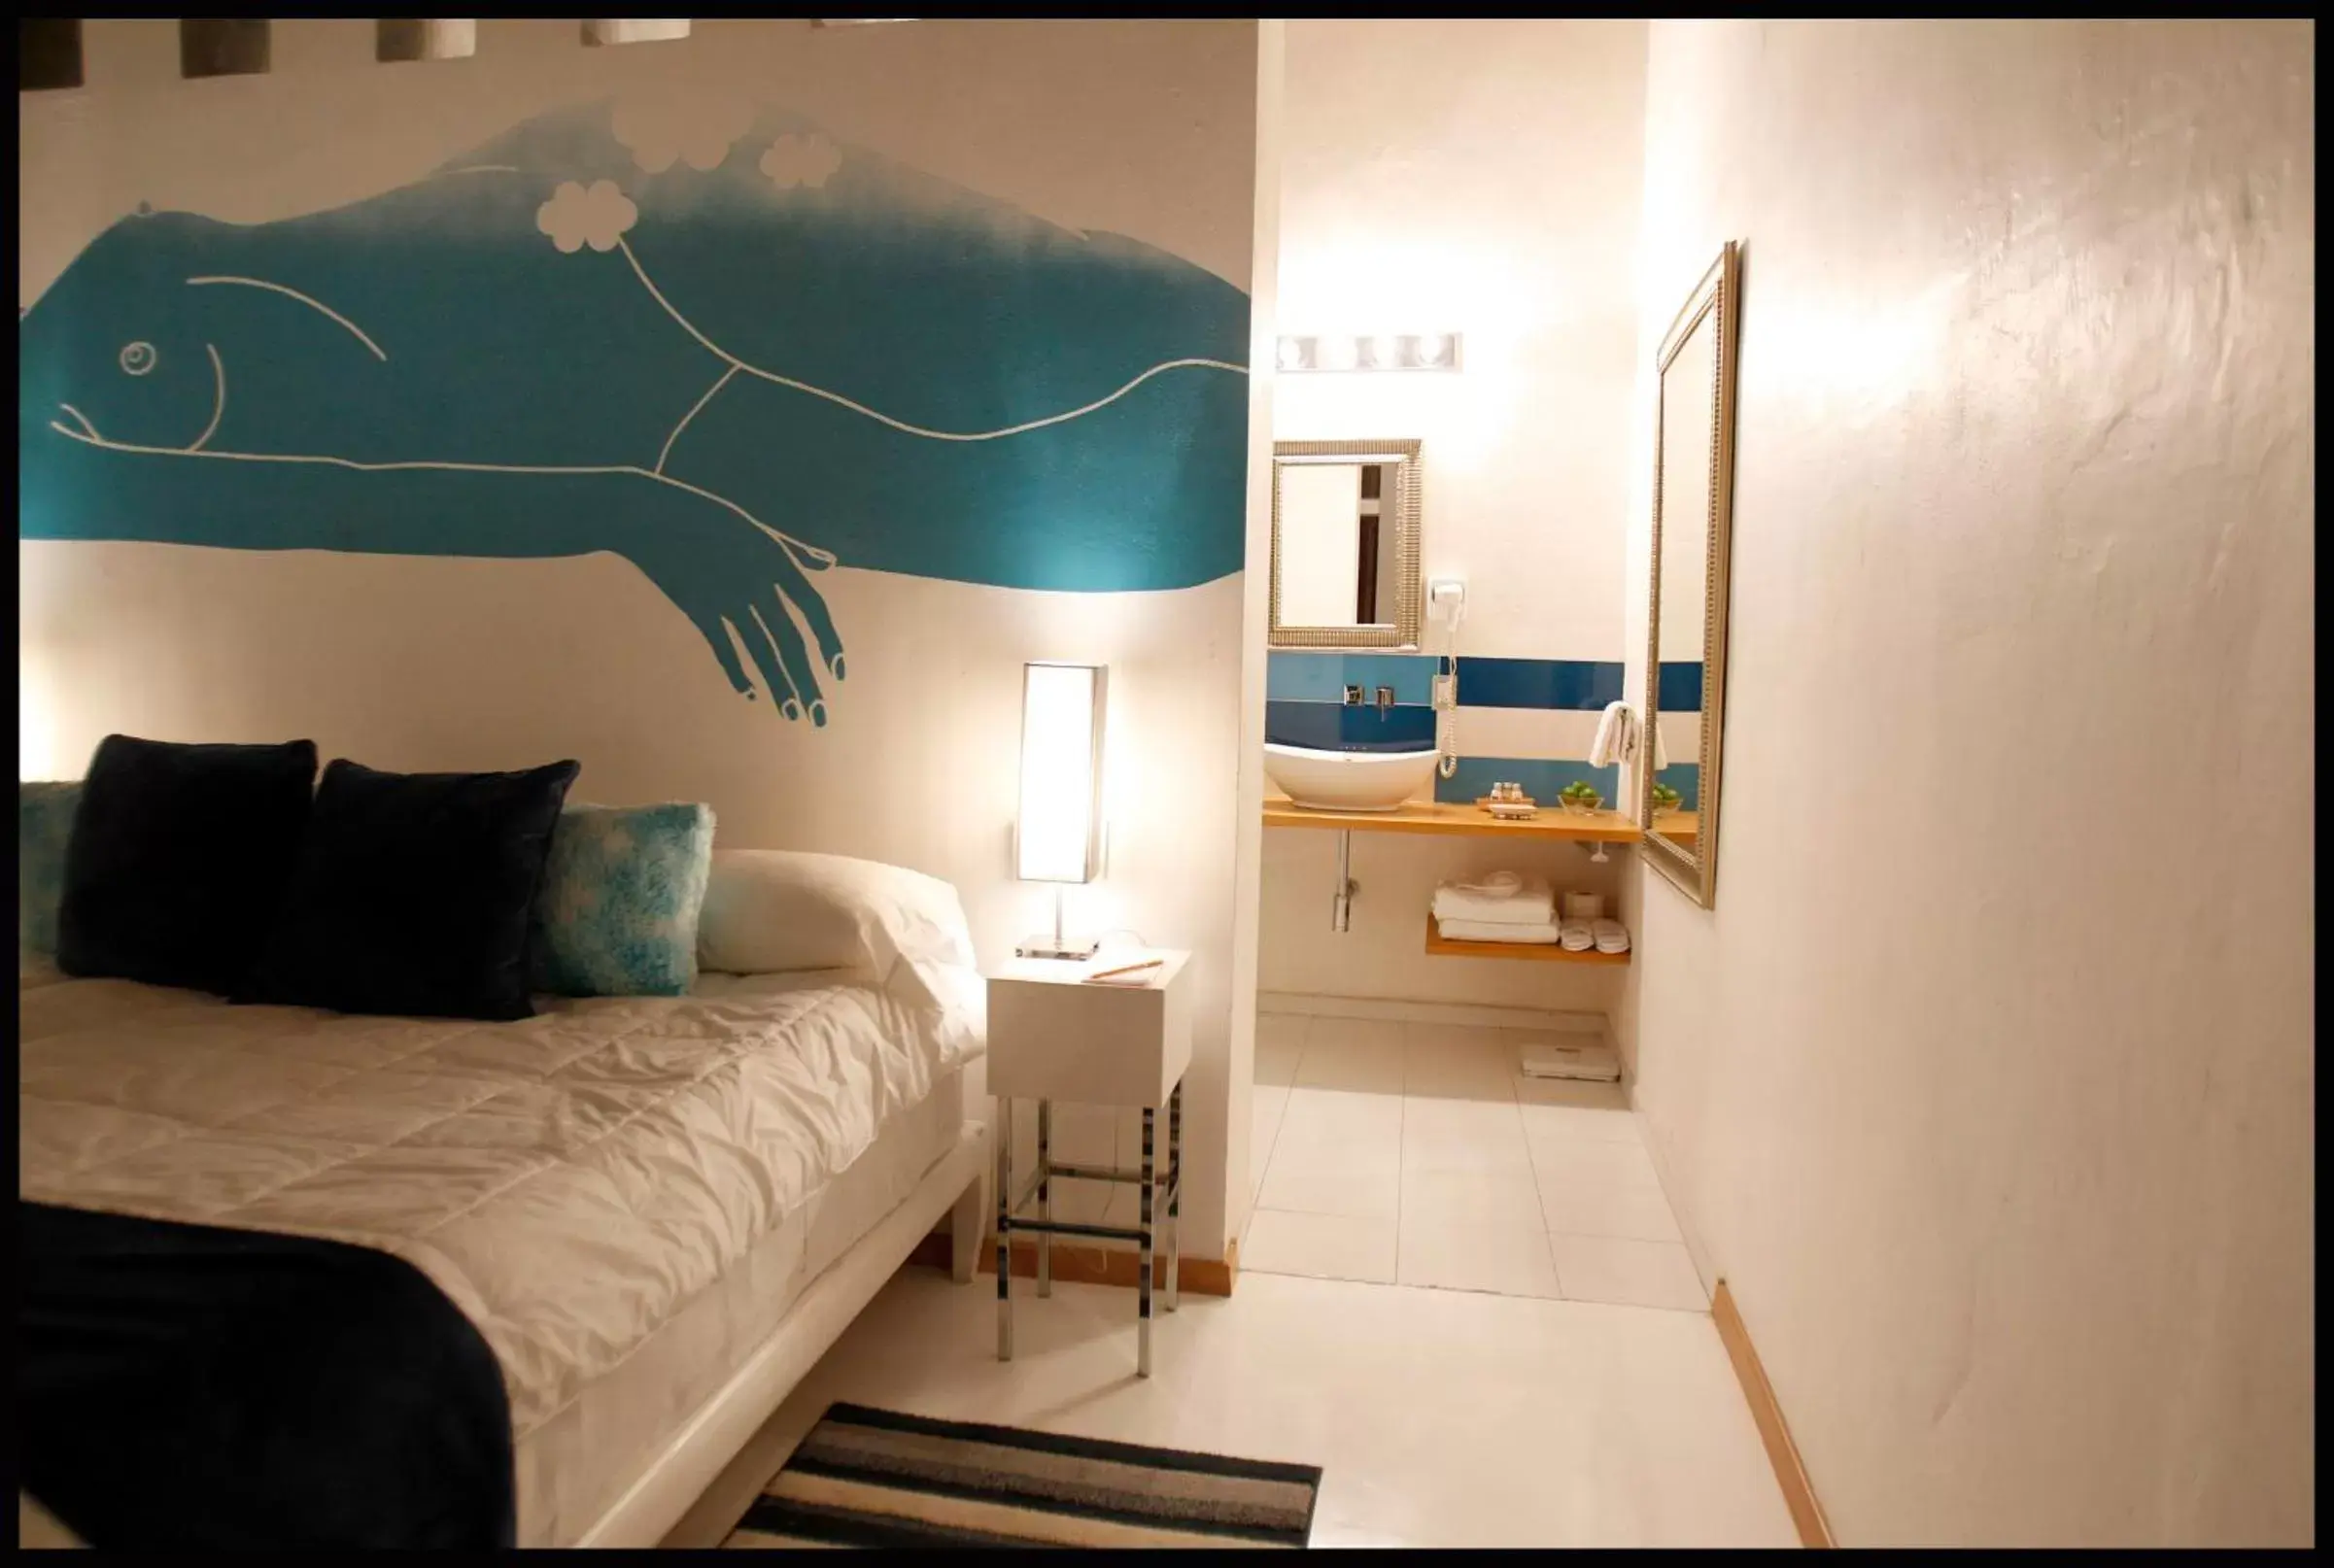 Bedroom, Room Photo in El Sueño Hotel & Spa